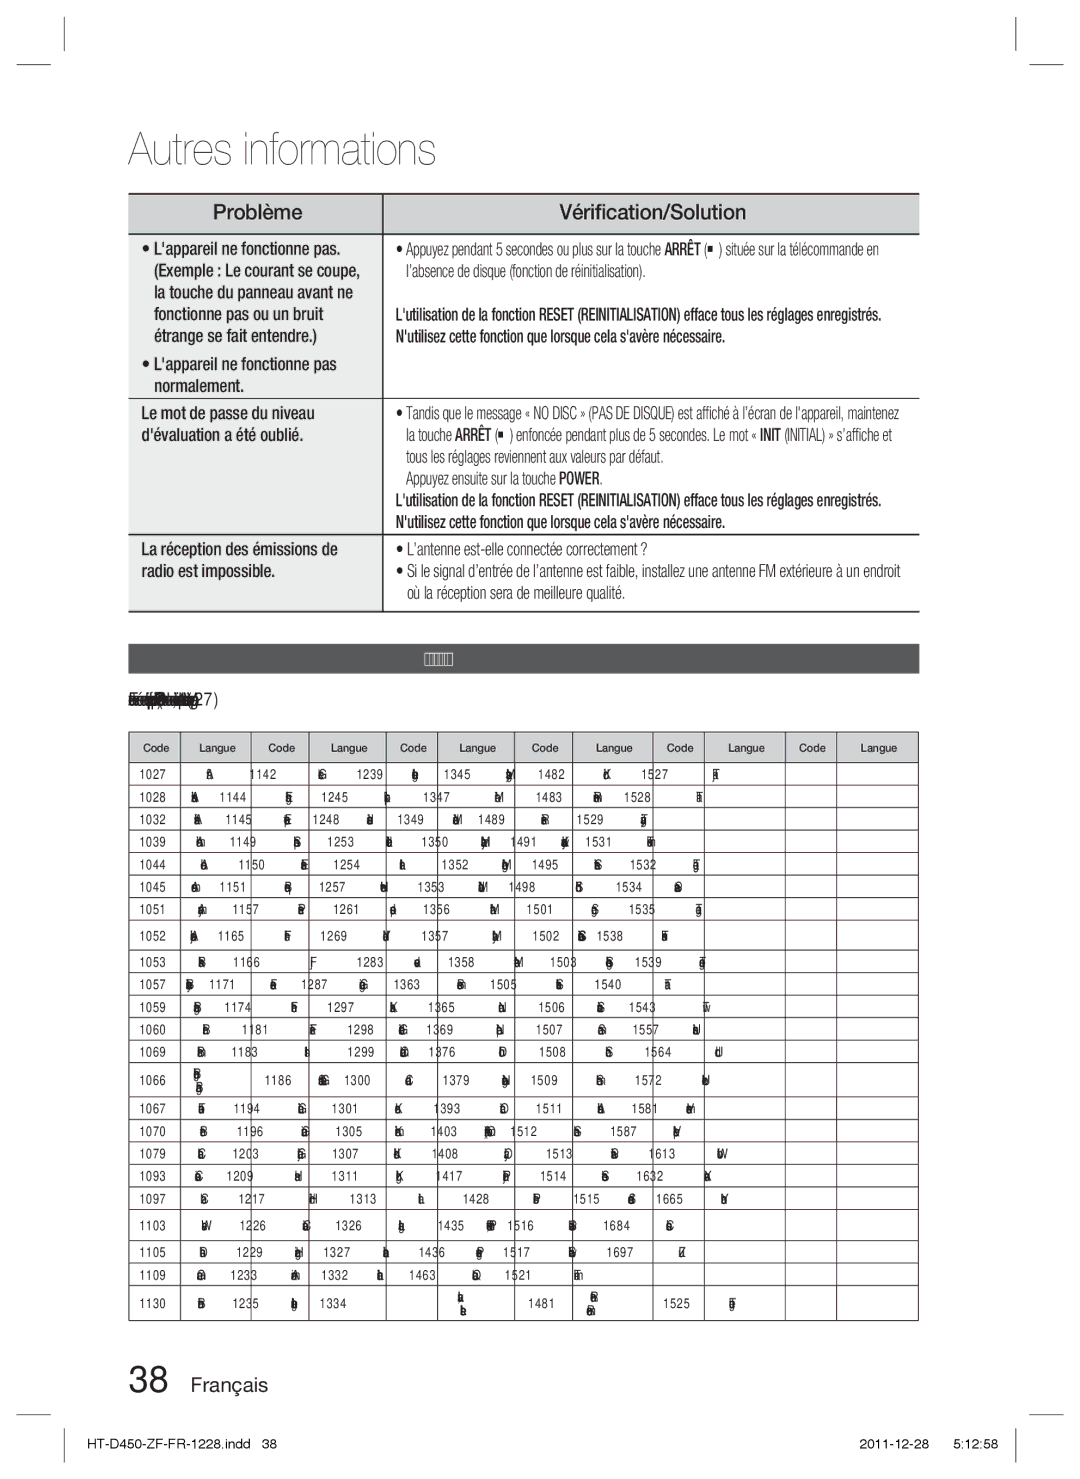 Samsung HT-D455/ZF manual Problème, Vériﬁcation/Solution, Liste des codes de langue 